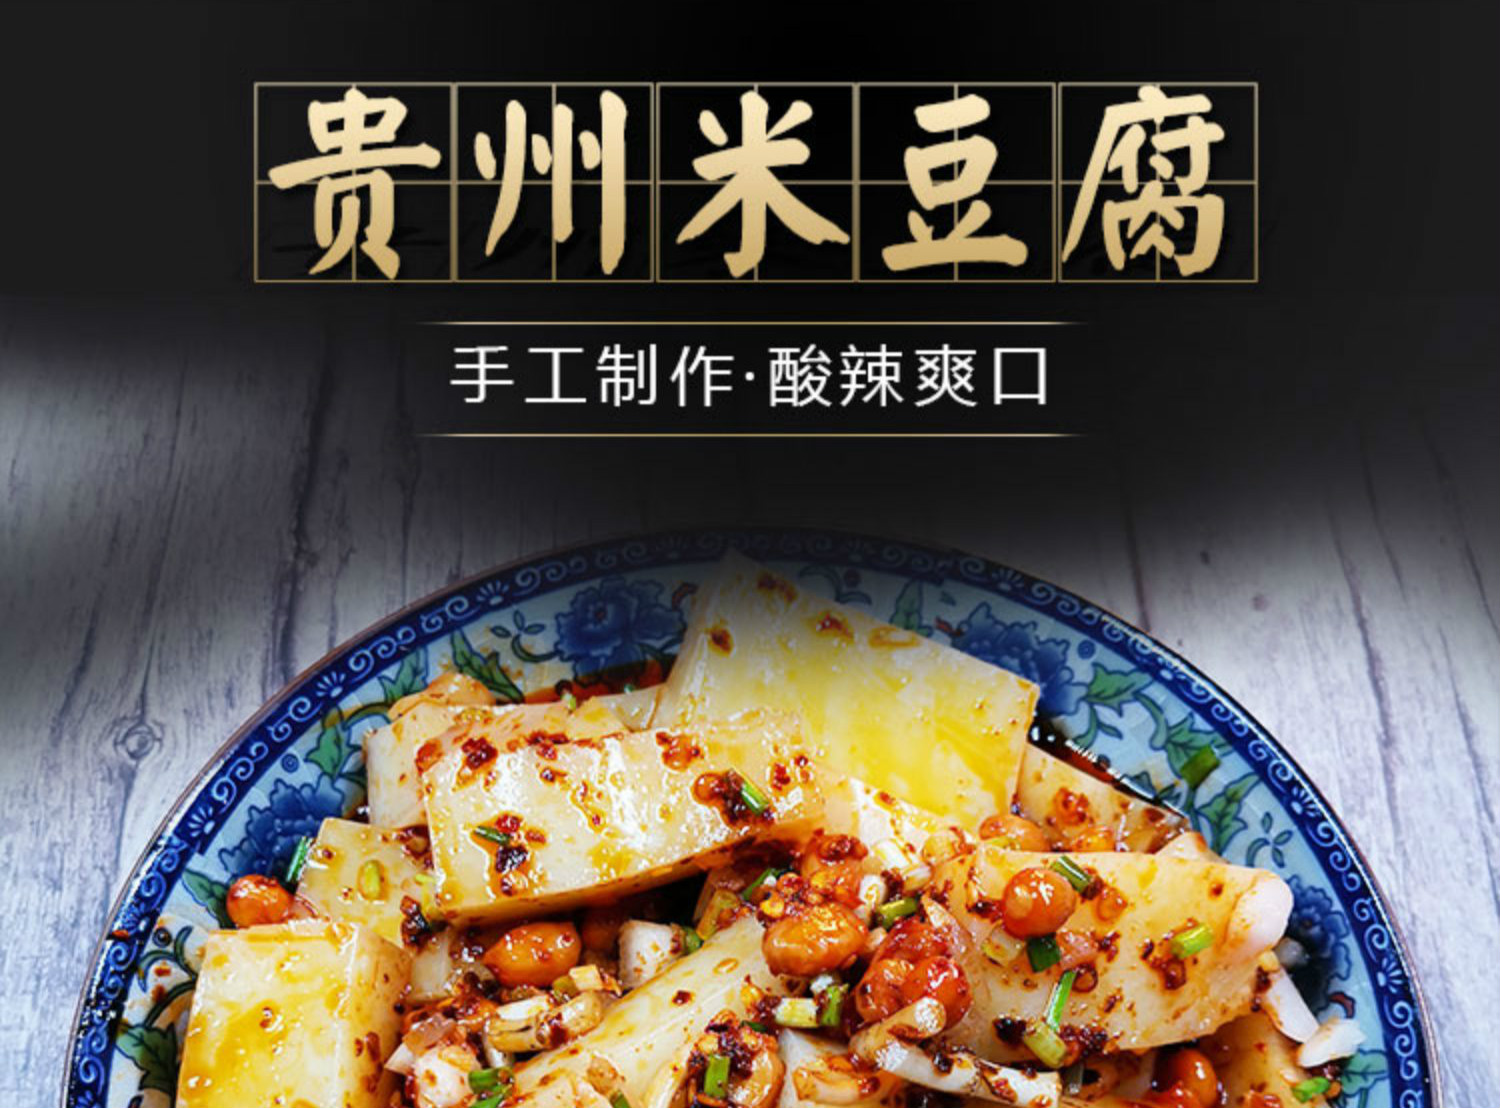 贵州米豆腐 贵州特产思南米豆腐凉粉小吃1500克 足量折耳根辣椒